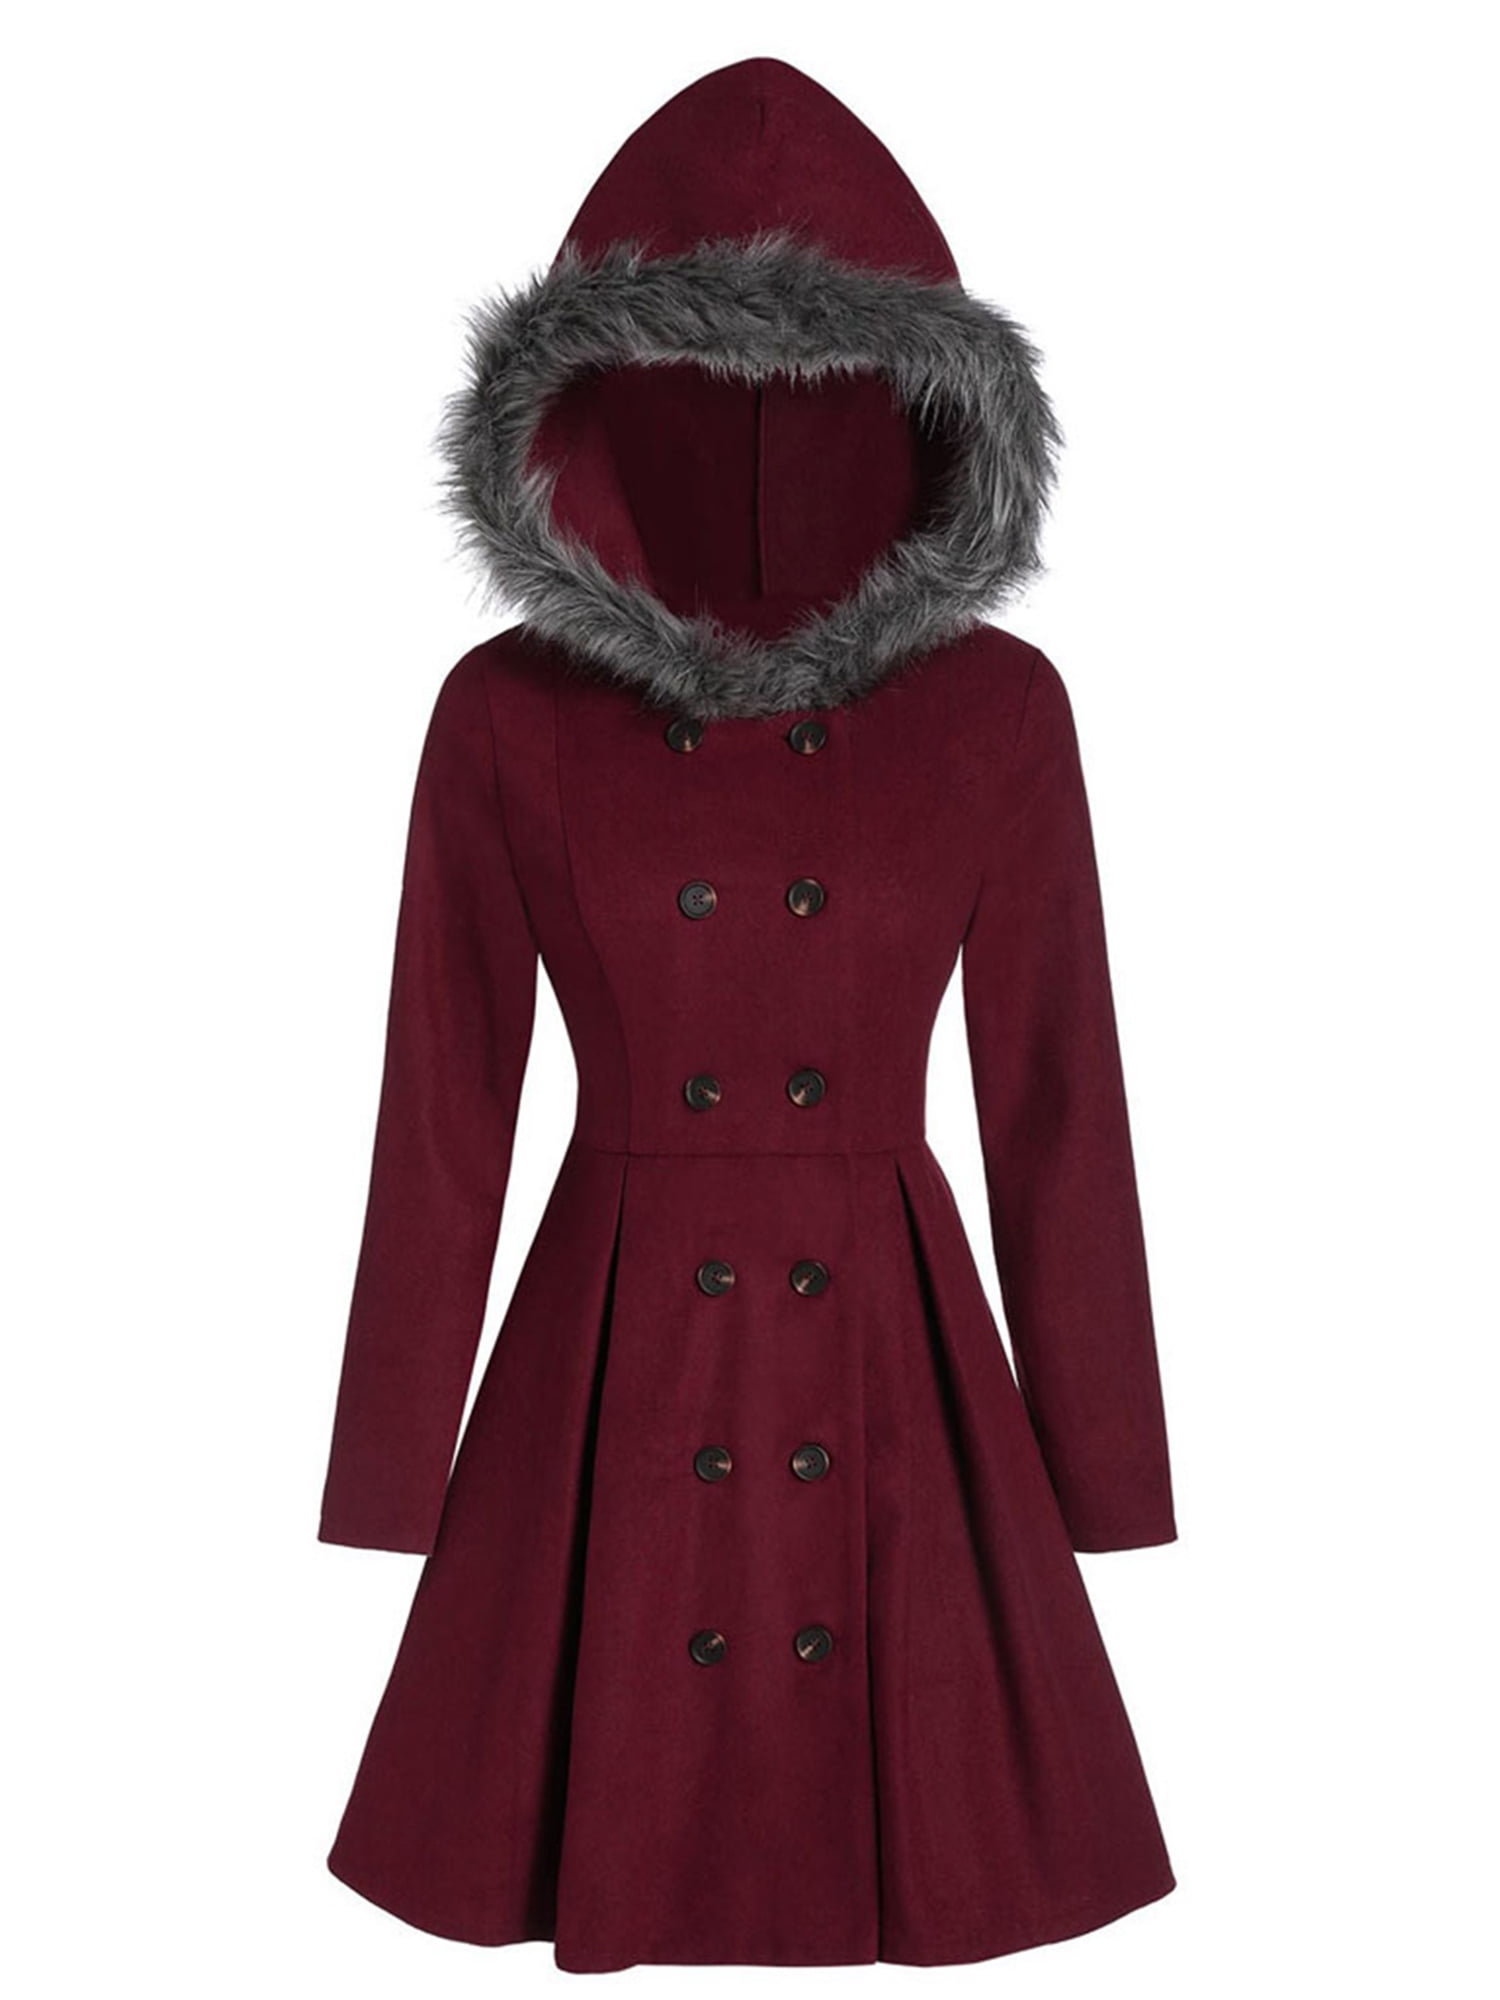 Womens Winter Warm Faux Fur Coat Jacket Long Thick Lapel Overcoat Outwear Sizes